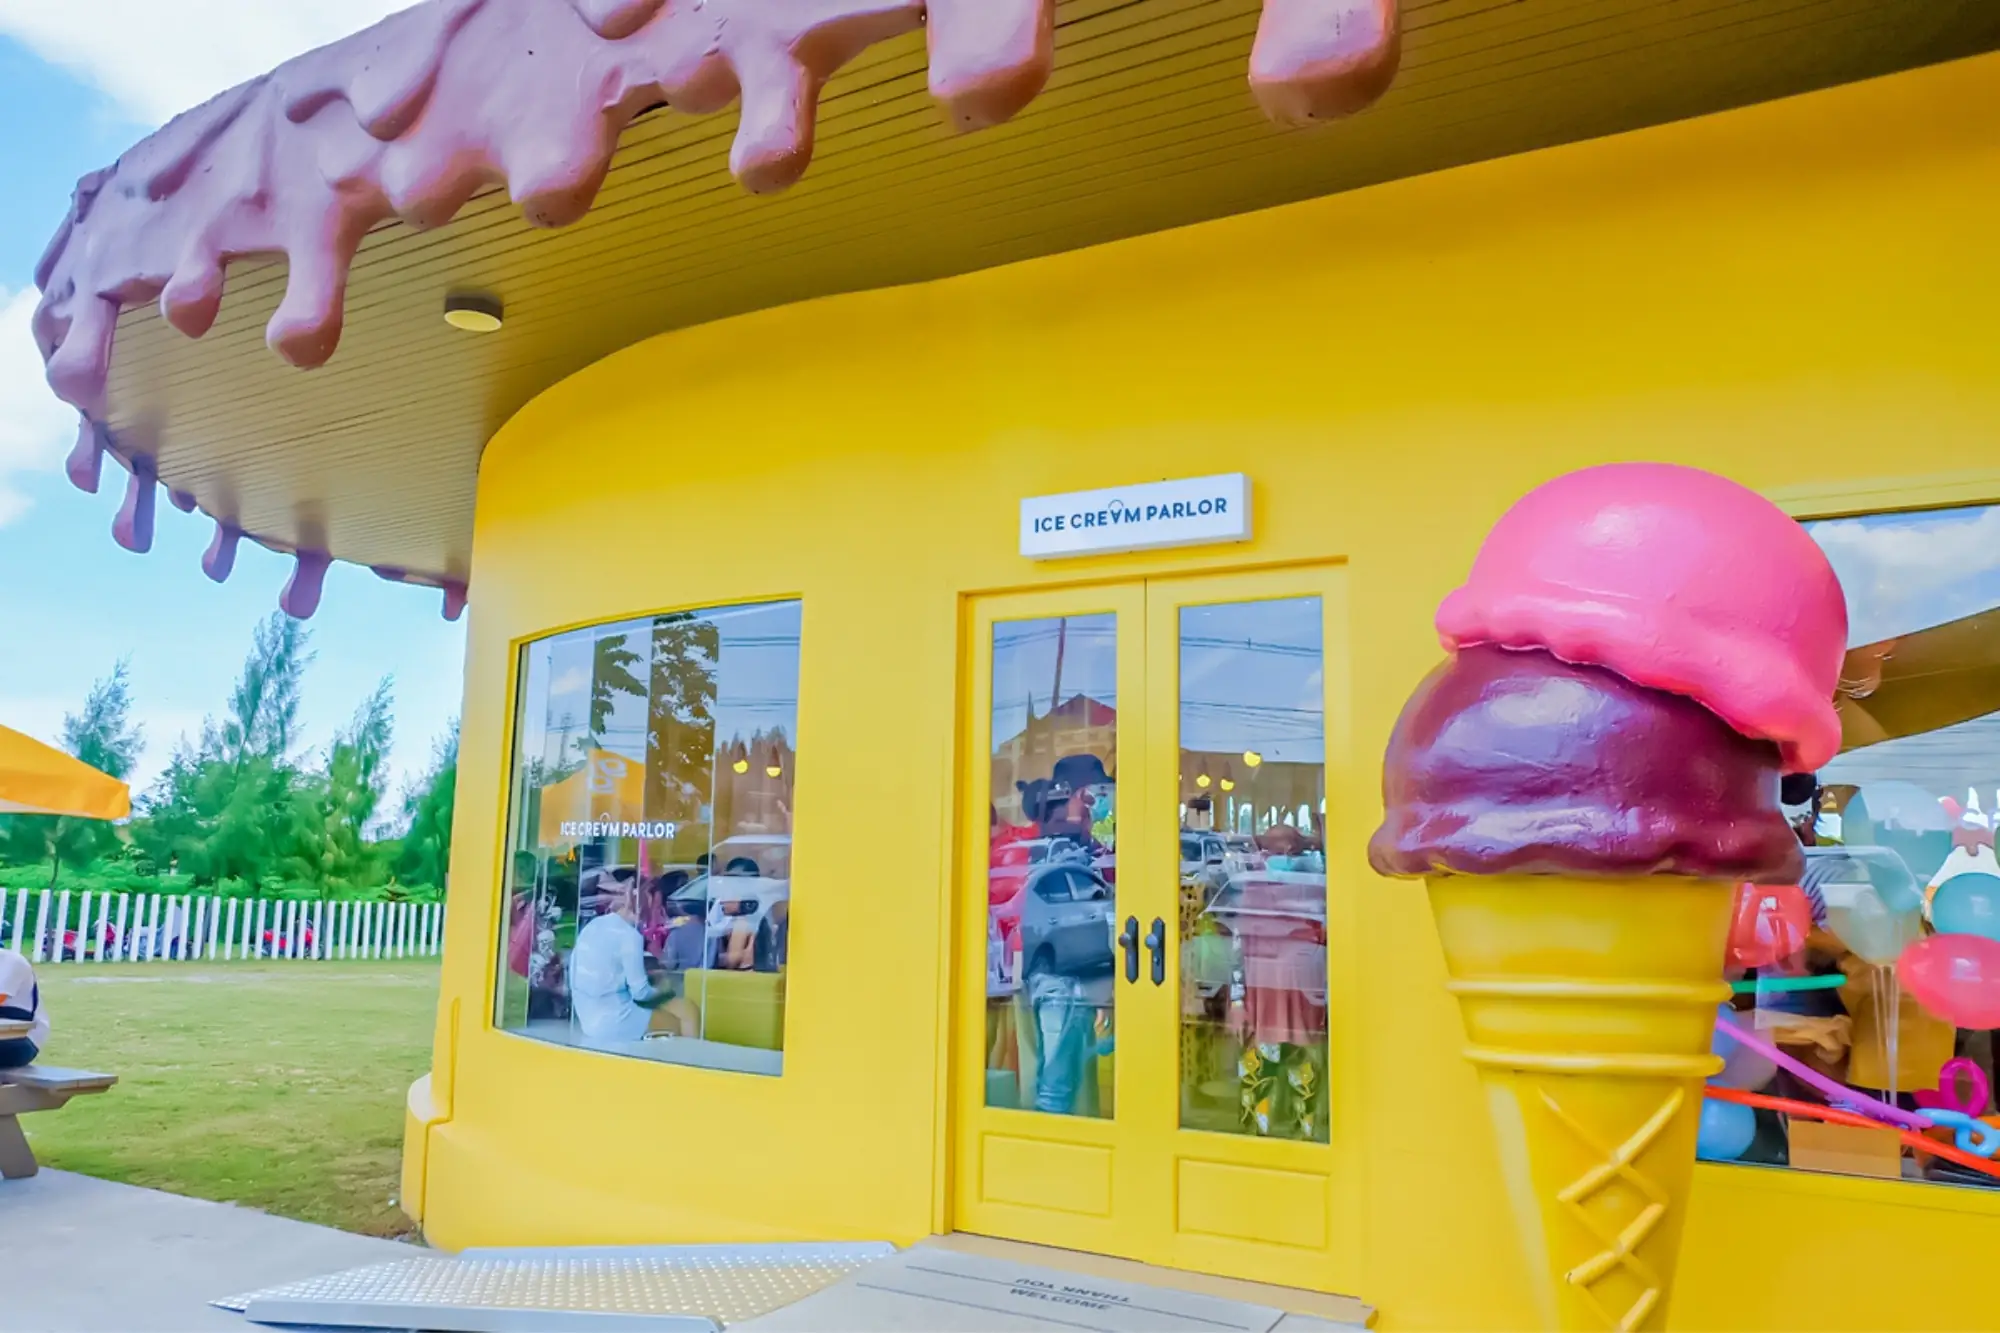 芭堤雅景点好吃好拍“甜点乐园”！闯入动画场景打卡巨型冰淇淋、糖果屋（来源：官方社群）